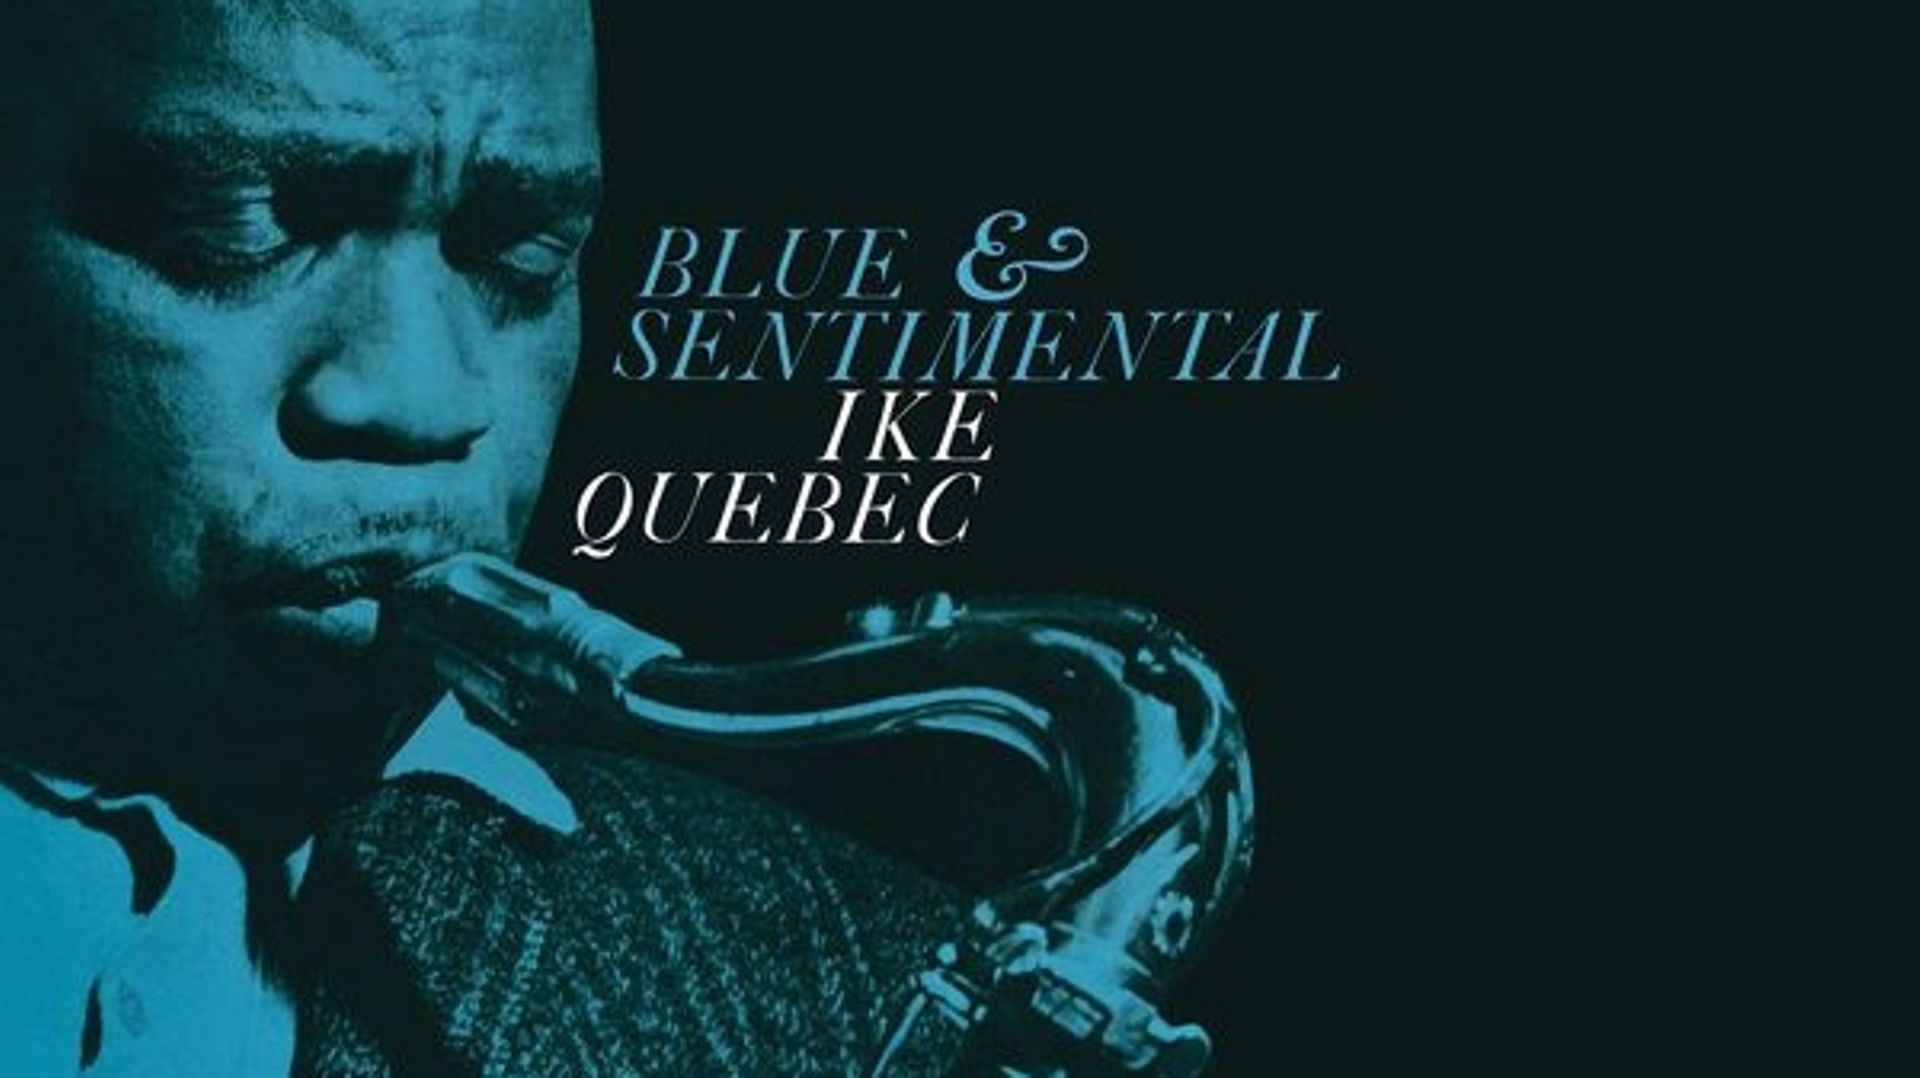 Il y a 60 ans s’enregistrait l’album "Blue & Sentimental" d’Ike Quebec